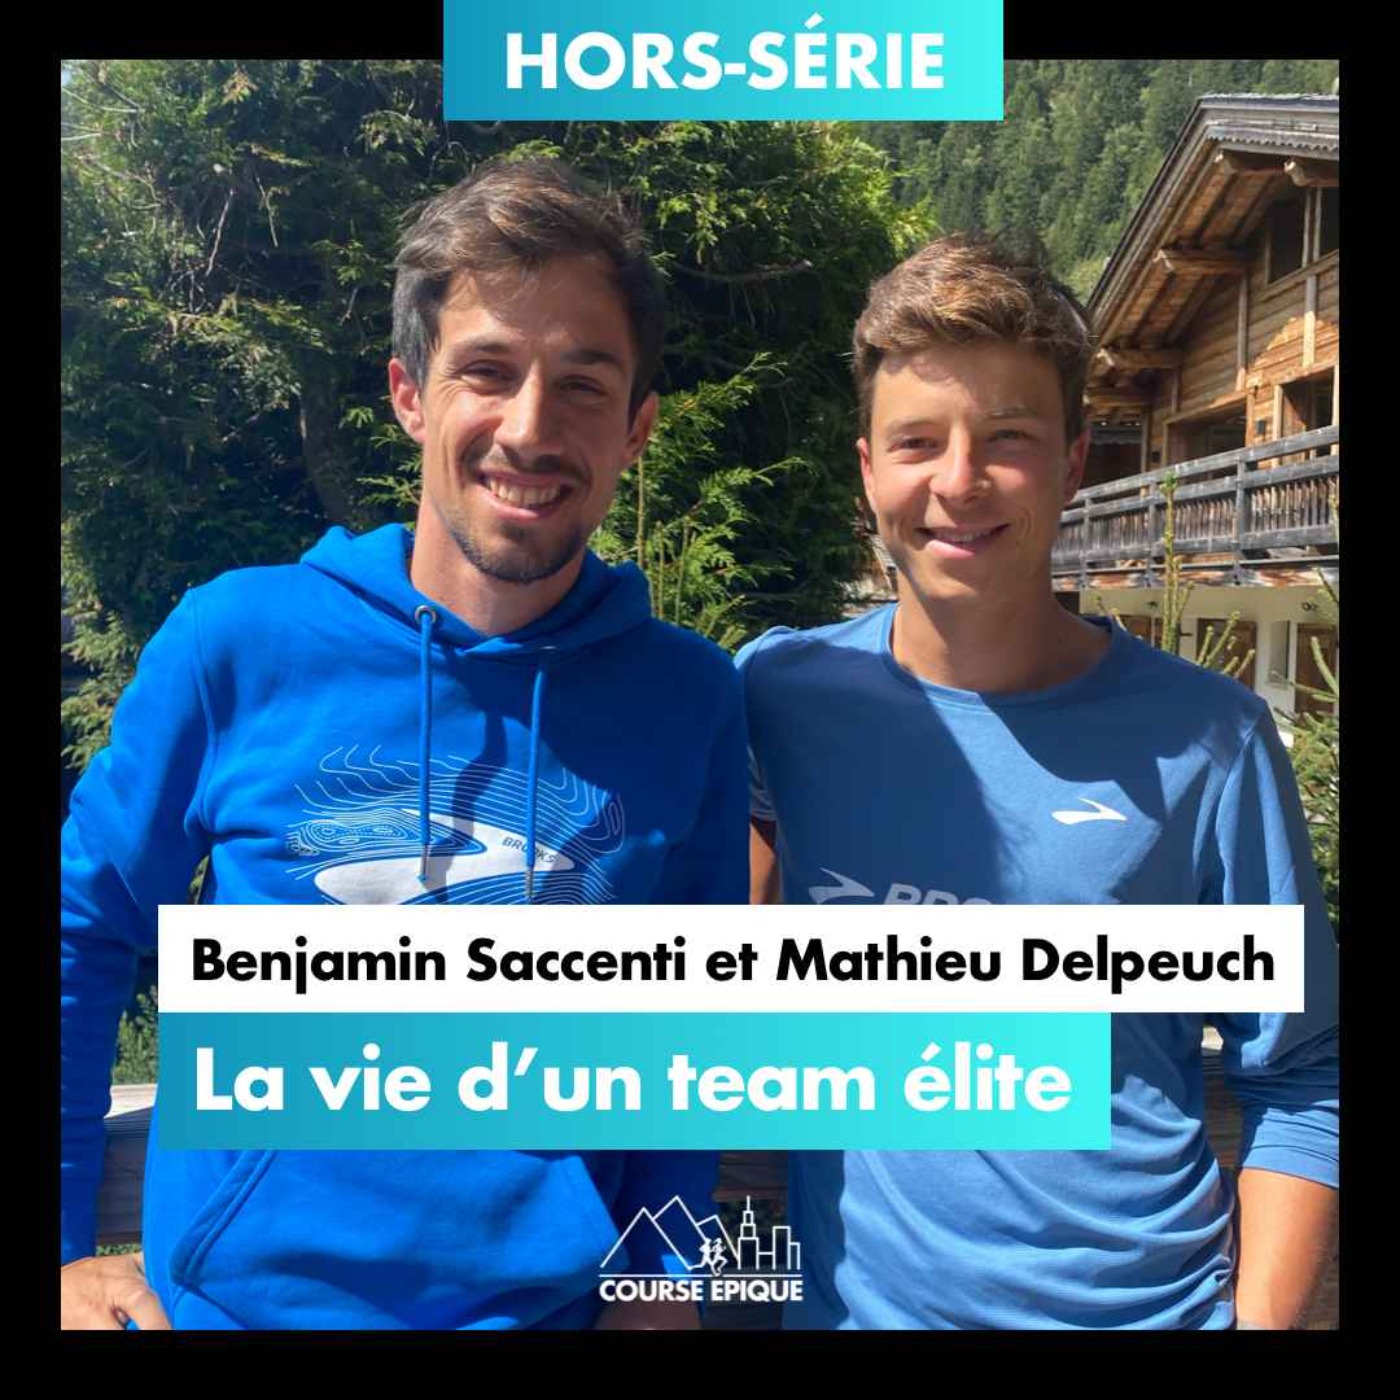 [HORS-SÉRIE] La vie d'un team élite, avec Benjamin Saccenti et Mathieu Delpeuch